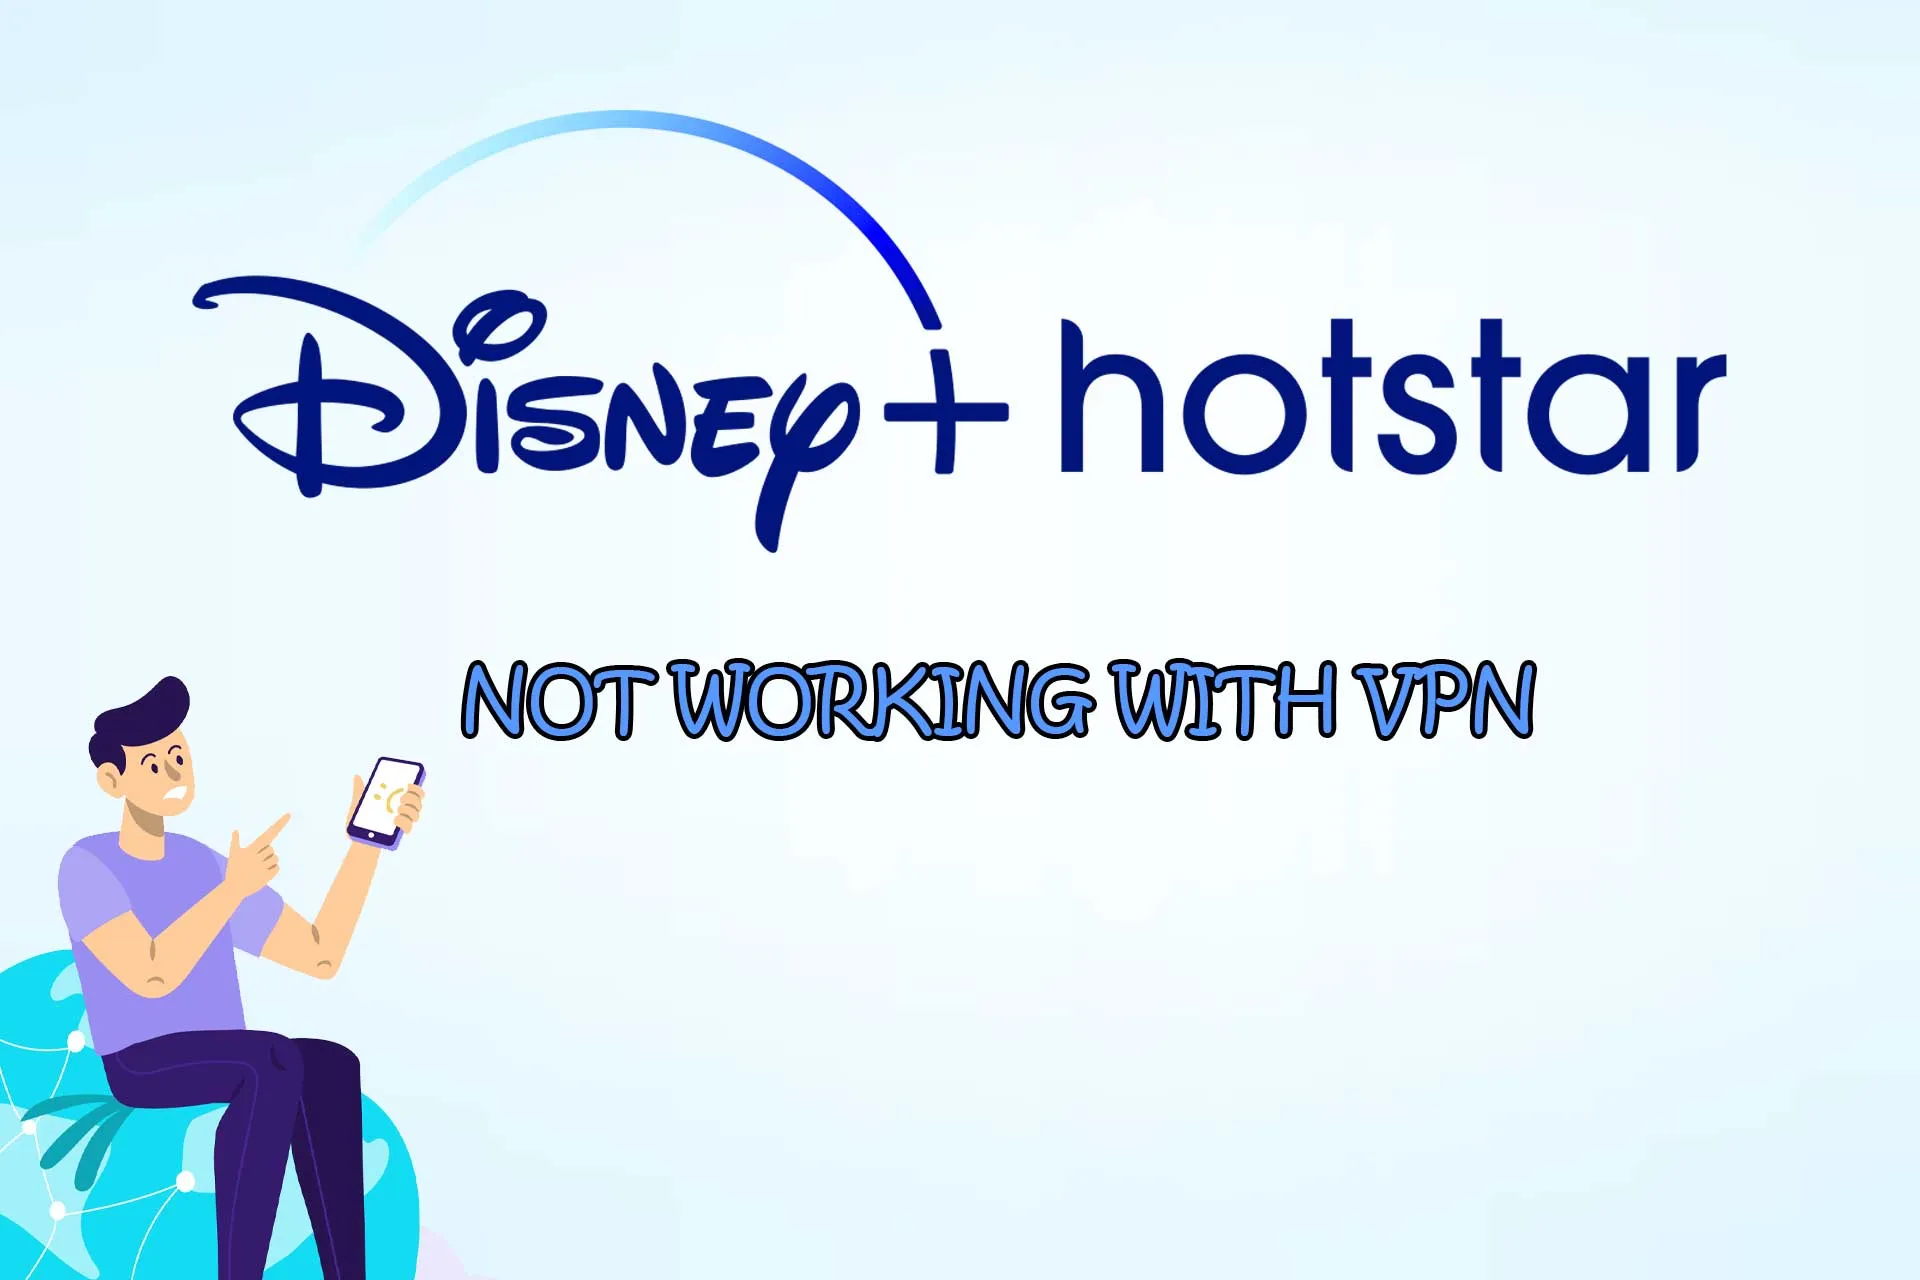 hotstar not working with vpn